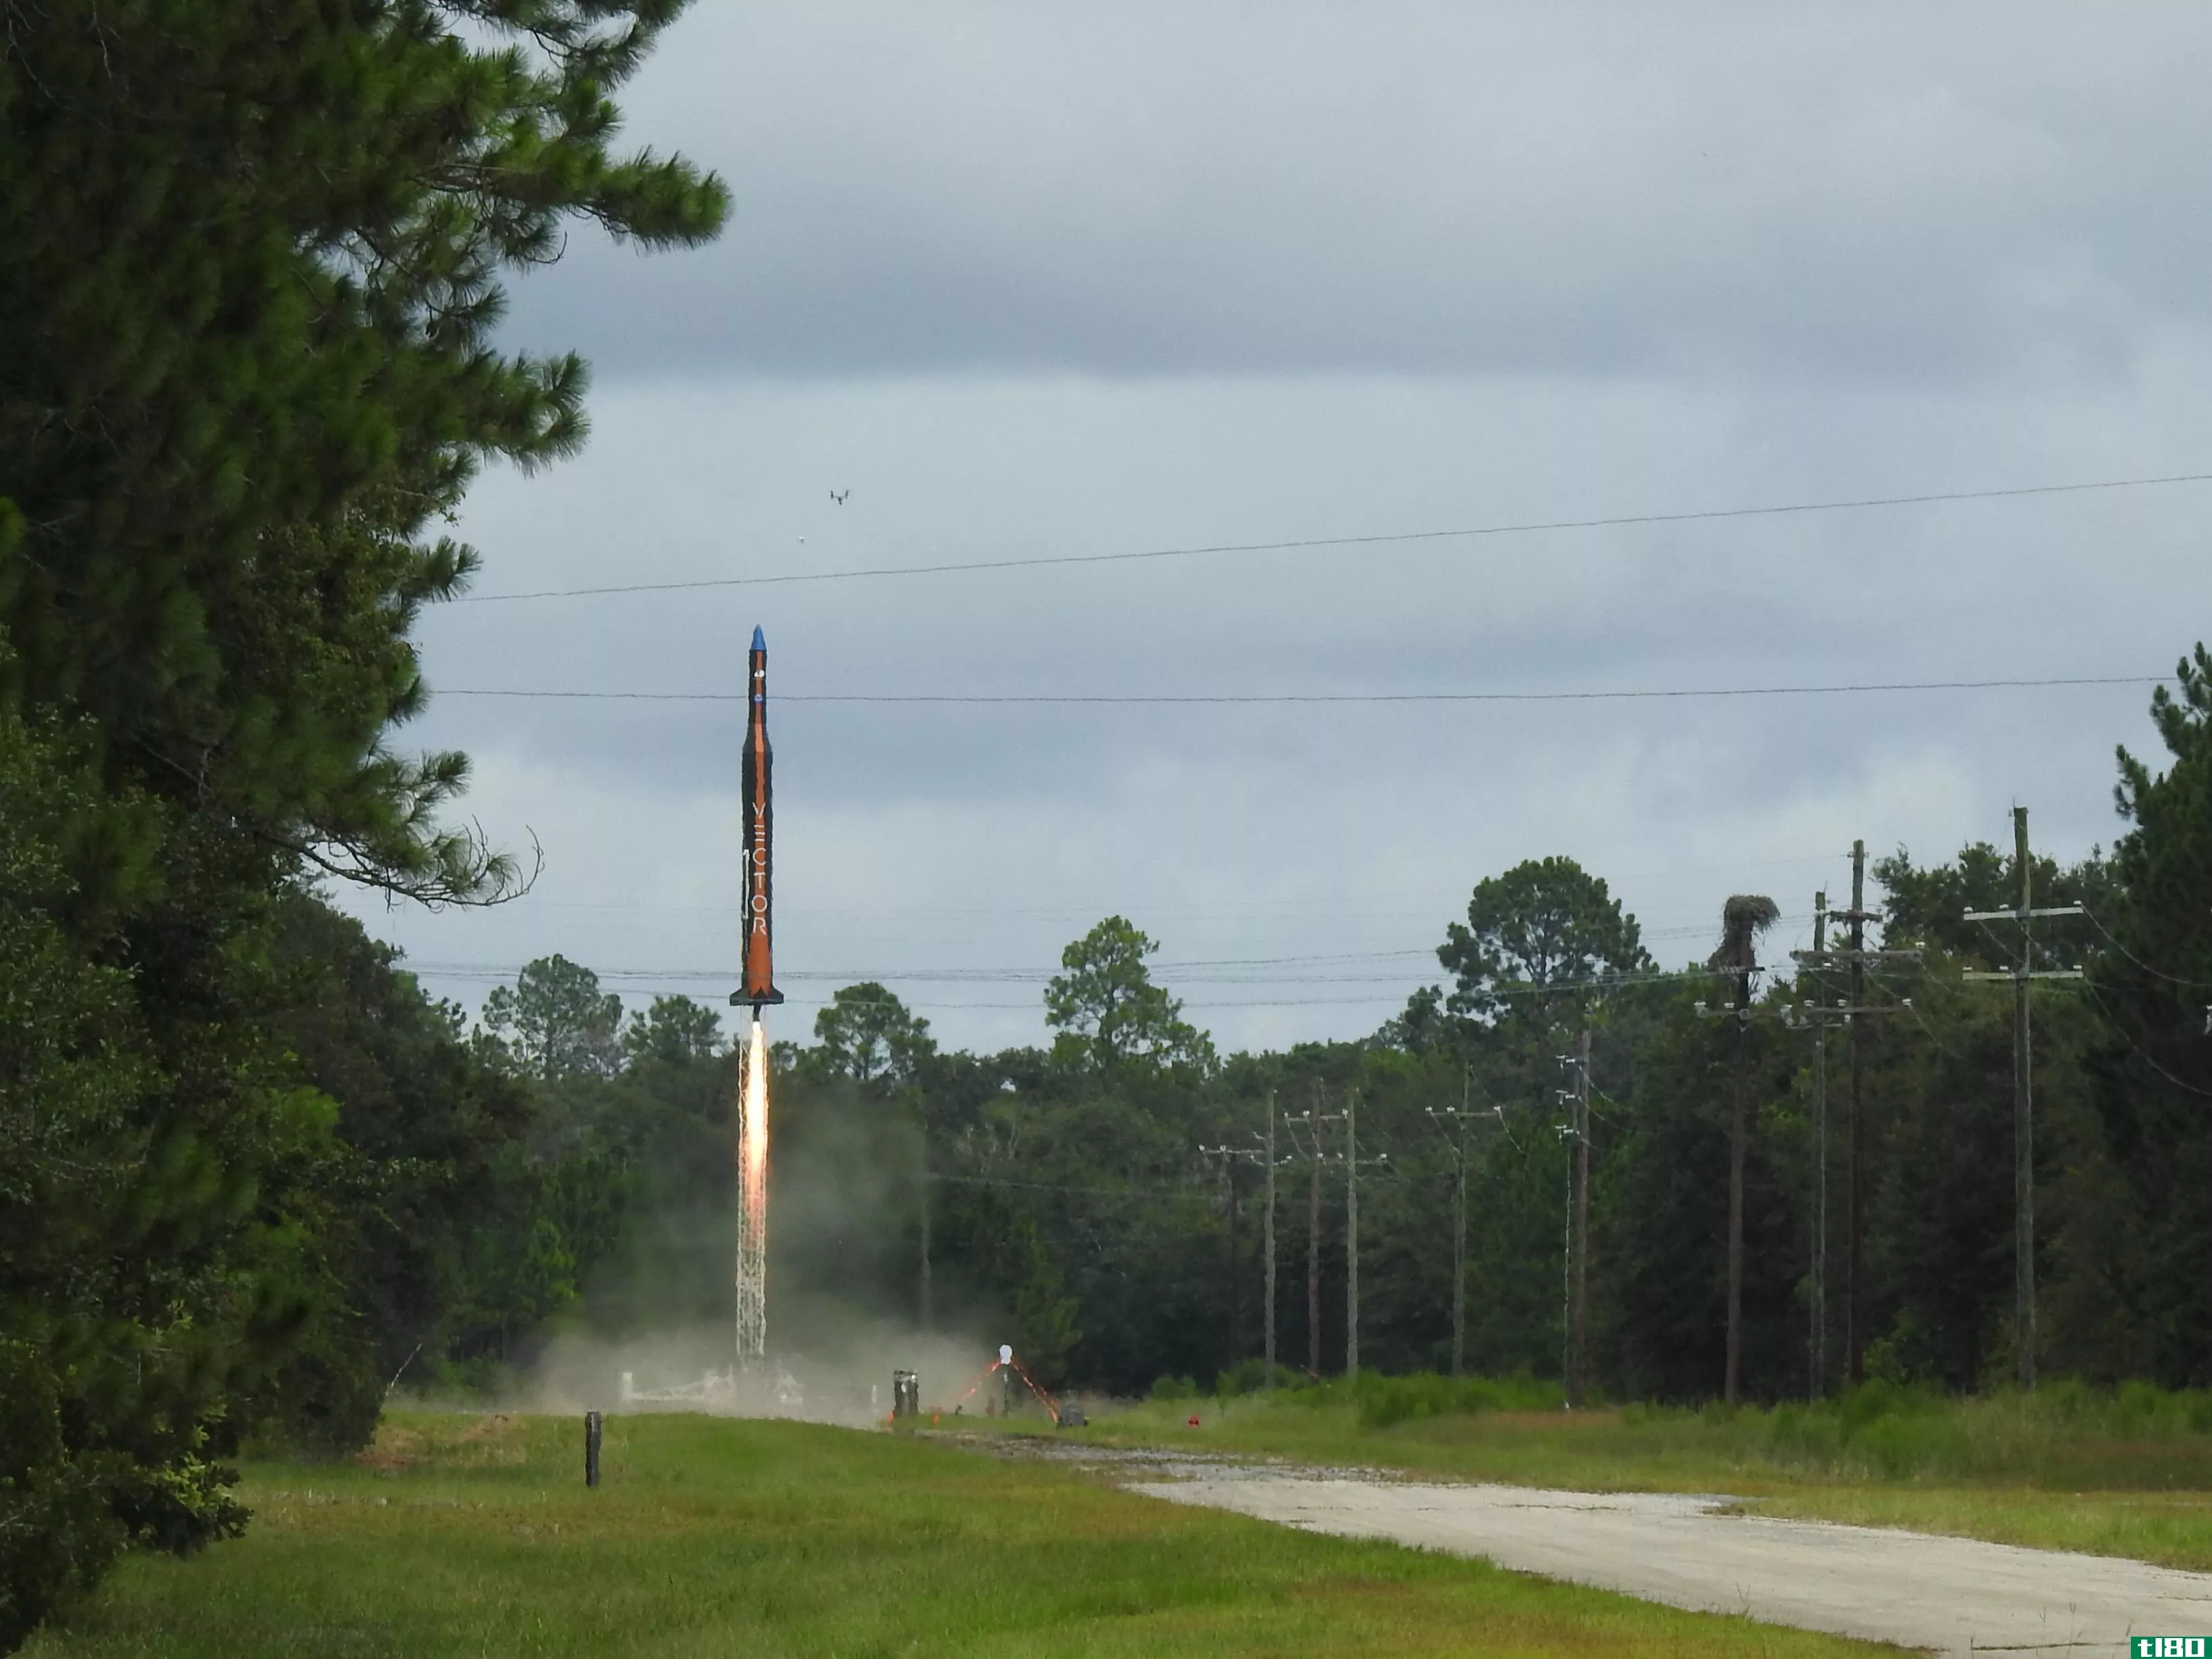 太空创业公司vector明年将从弗吉尼亚州发射三枚小型火箭进入轨道